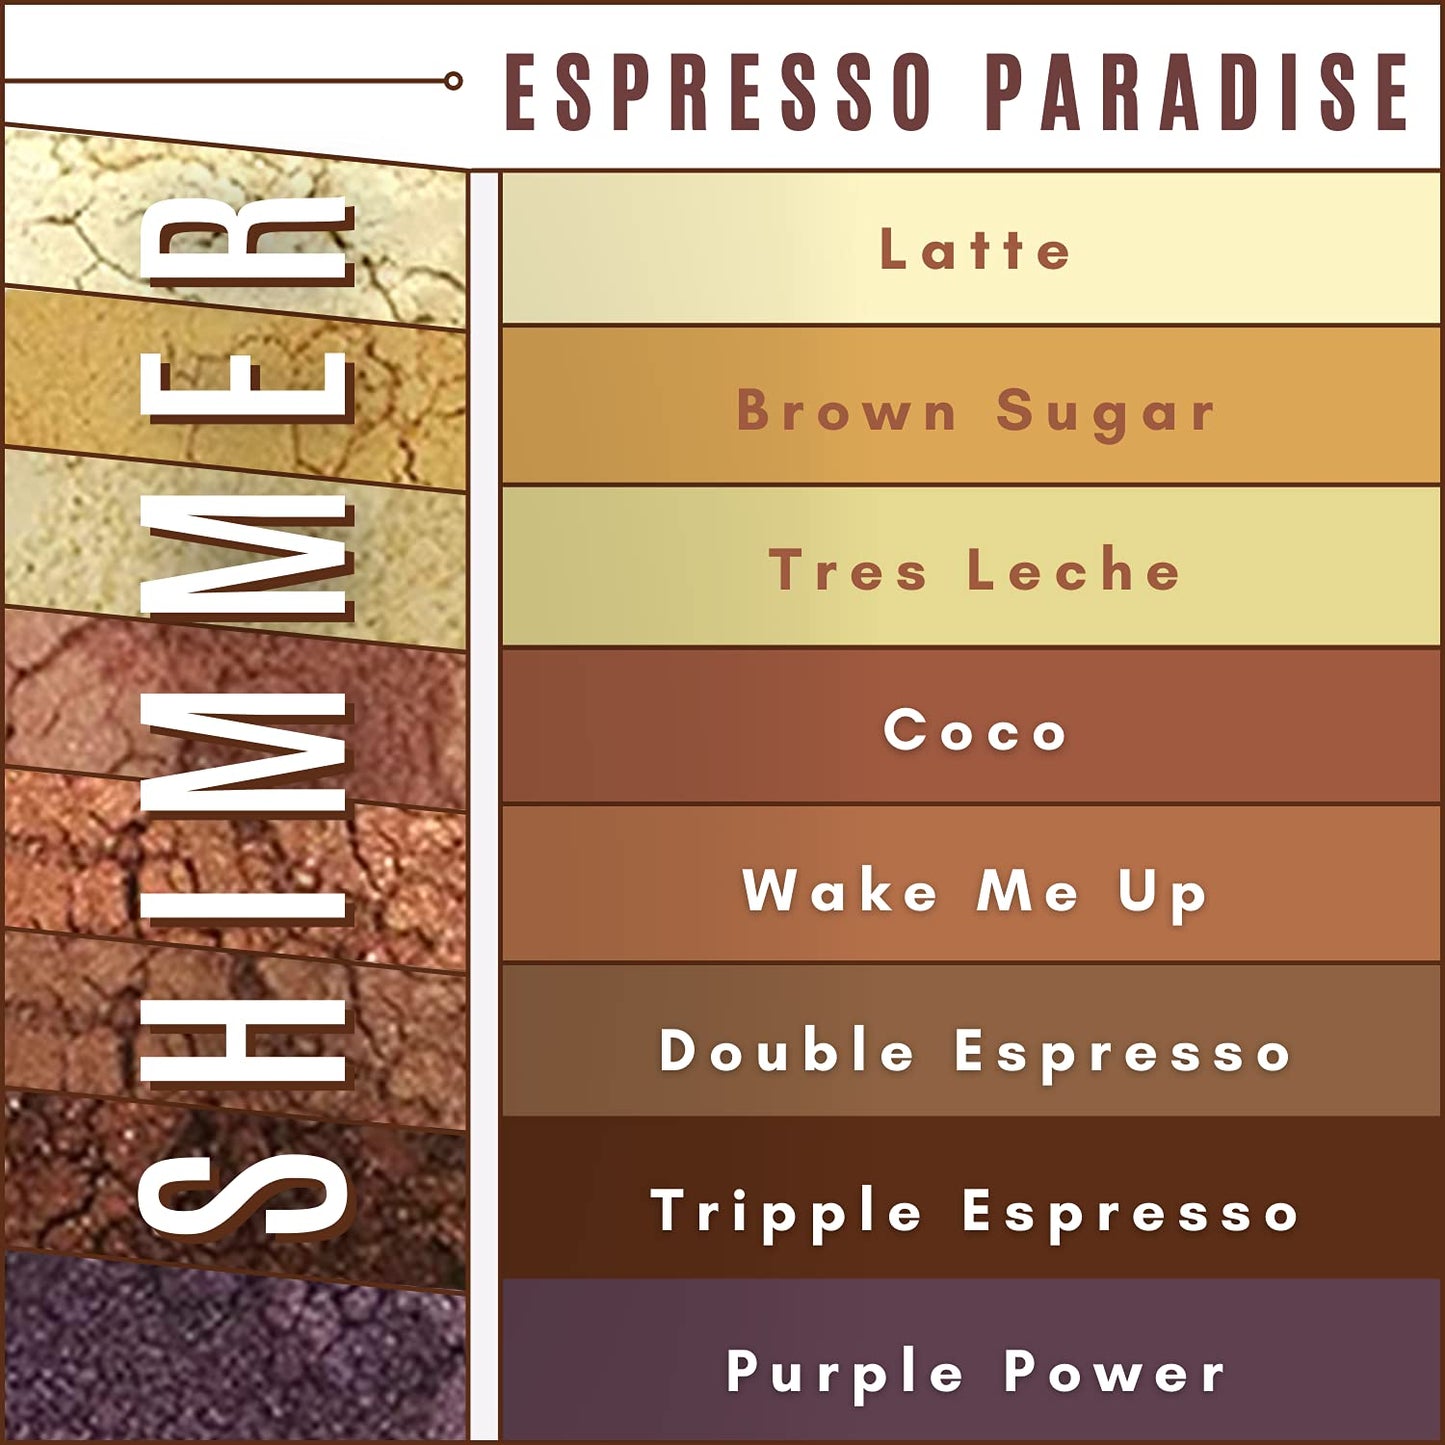 Espresso Paradise